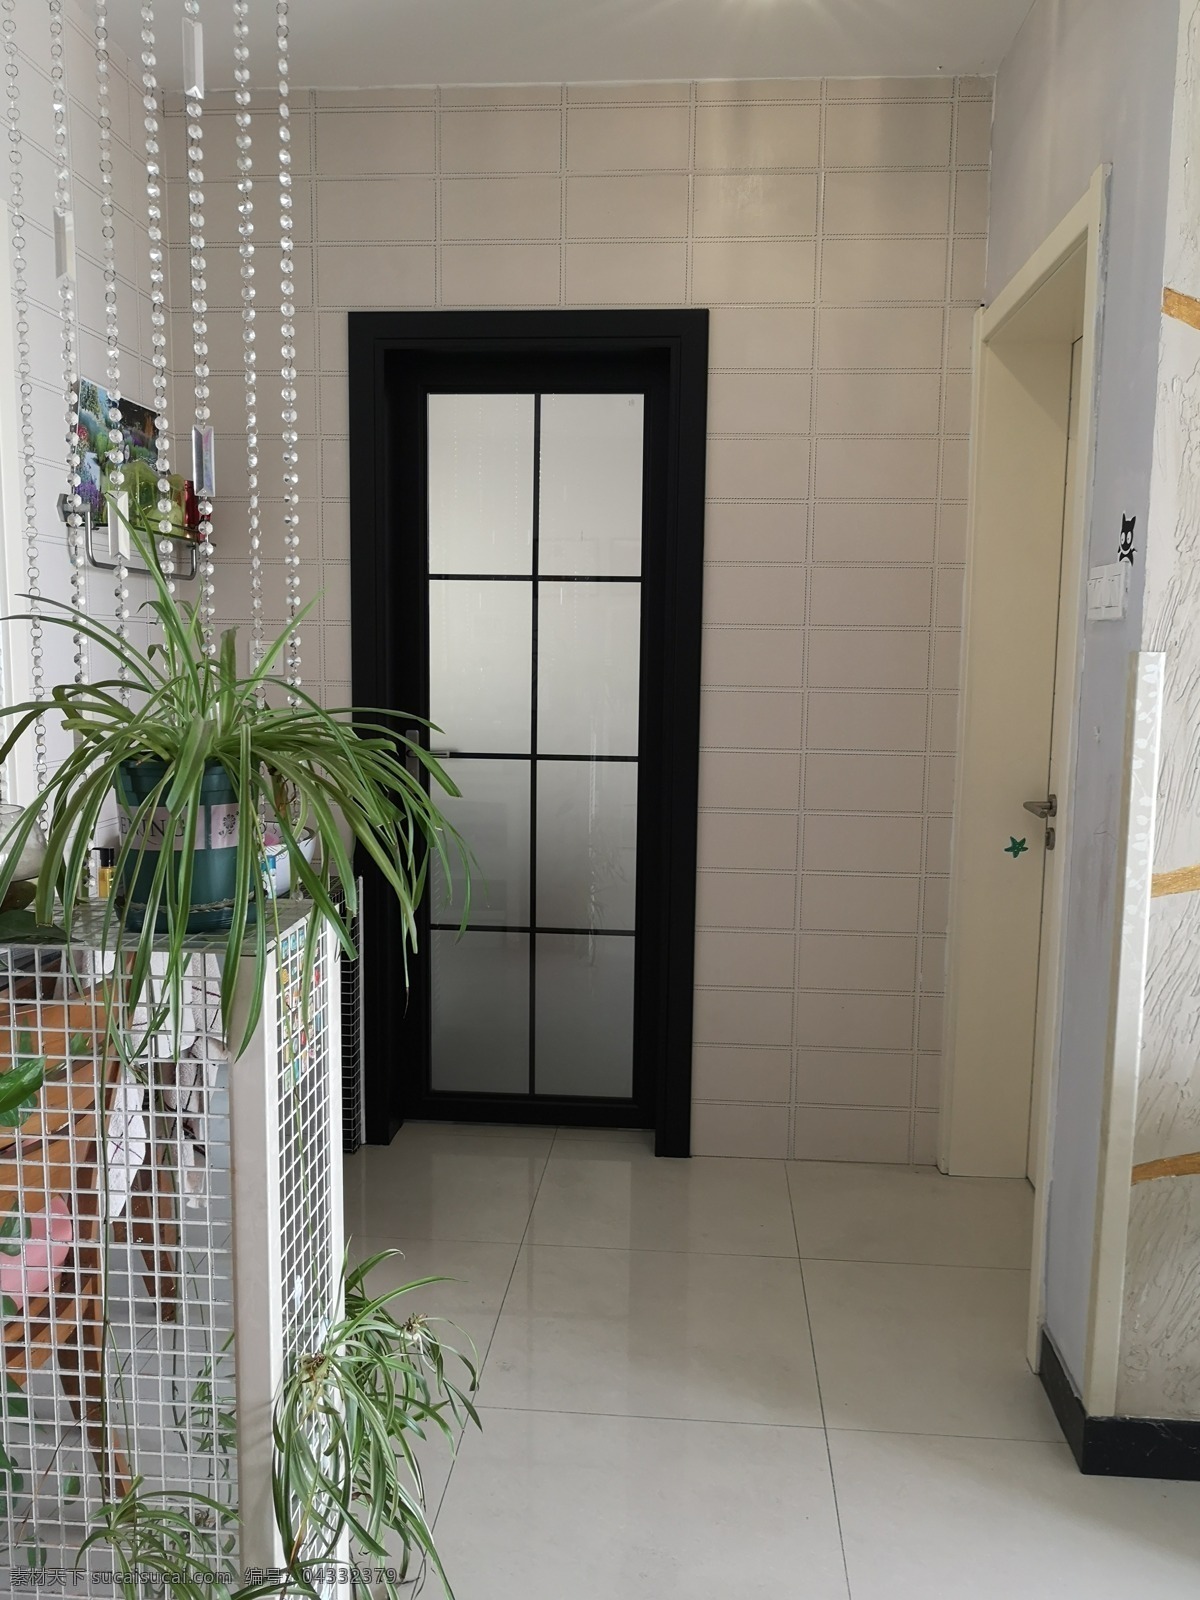 室内设计 卫生间门 黑色门 吊篮 珠帘 布纹砖 瓷砖 镜面贴砖 建筑园林 室内摄影